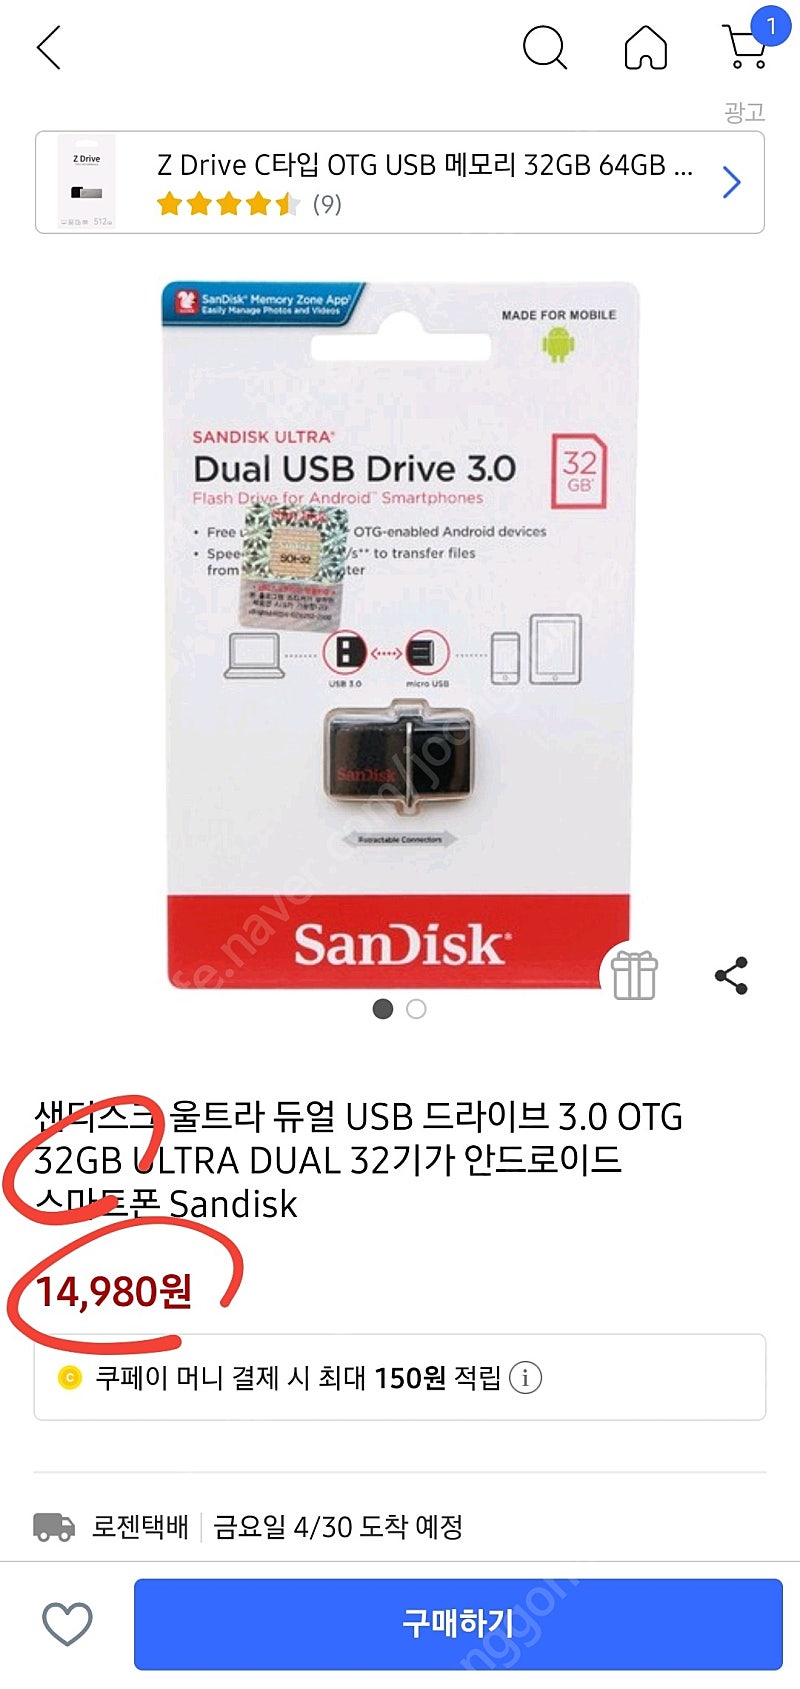 샌데스크 울트라 듀얼 USB (32GB, 64GB)